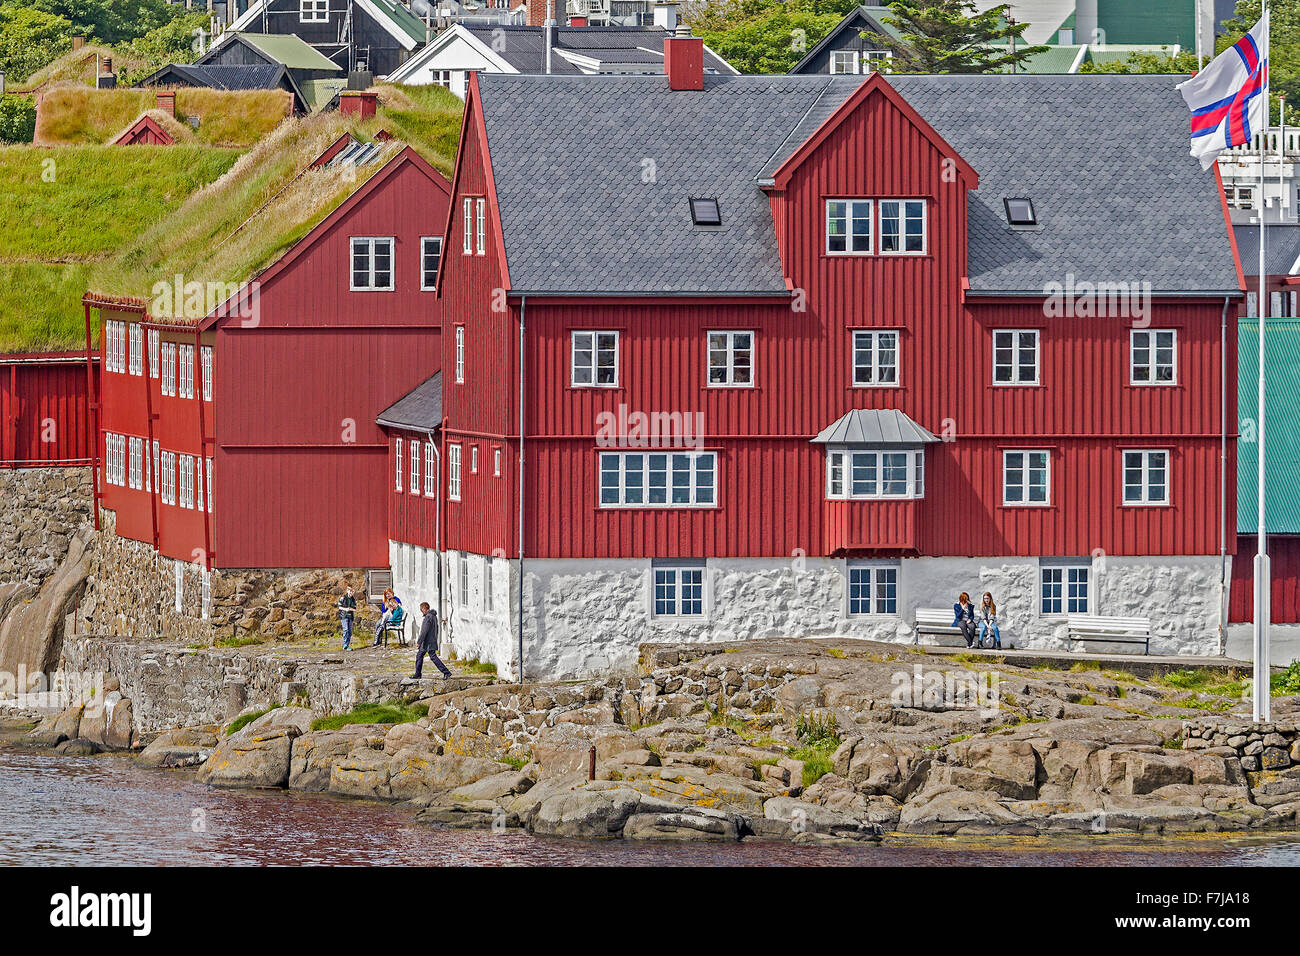 Blick von der Stadt vom Hafen Torshavn, Färöer-Inseln Stockfoto